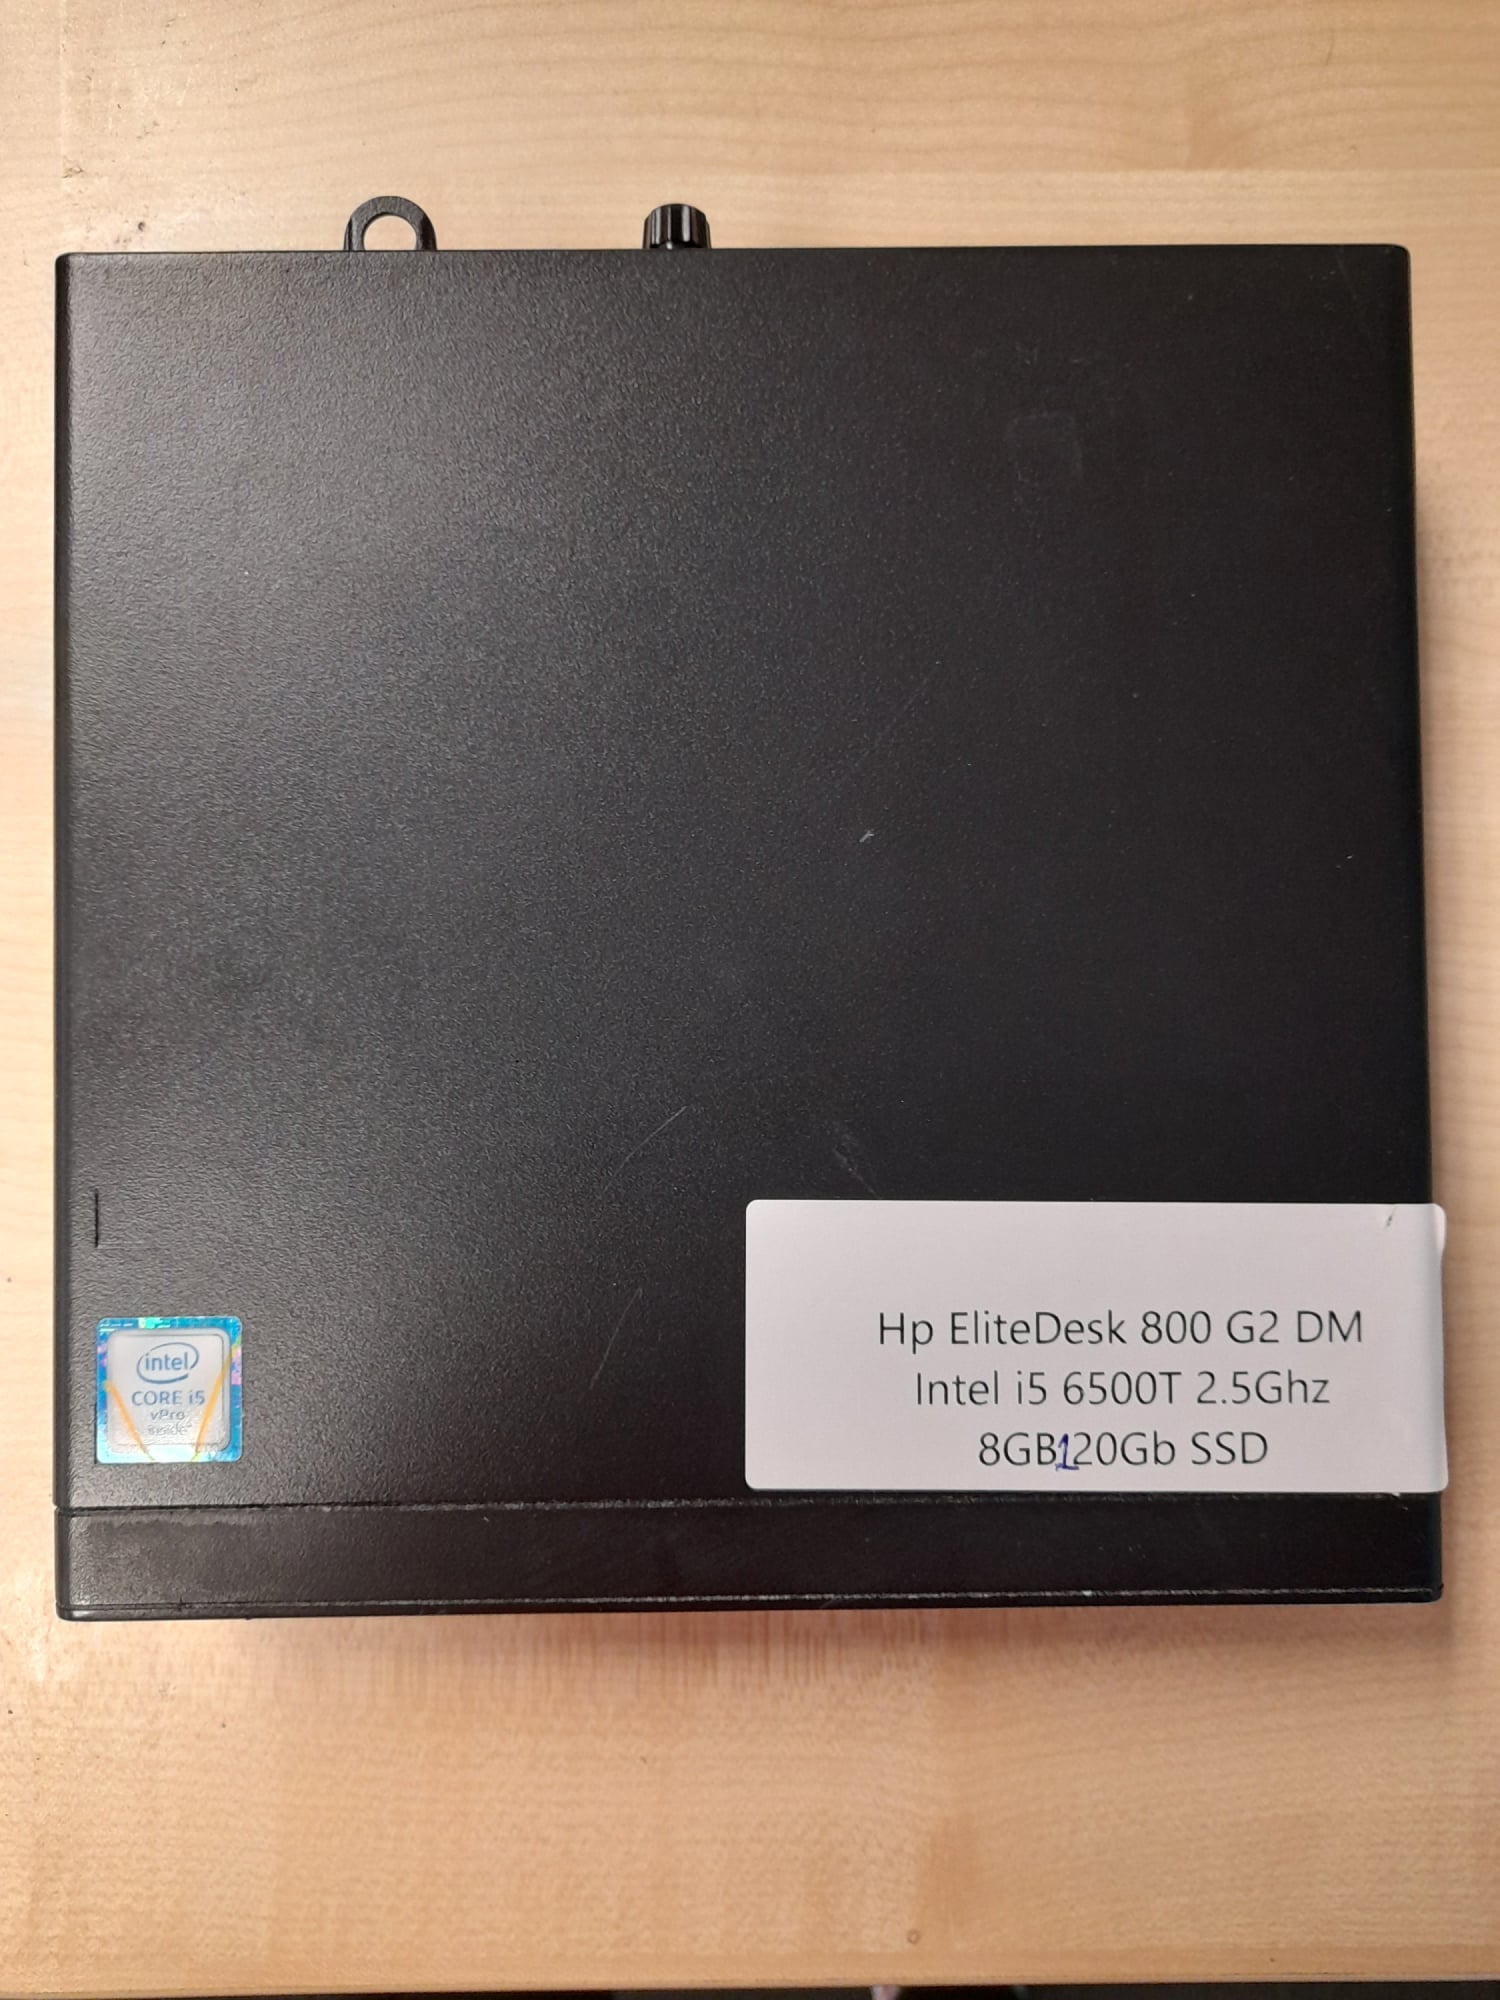 HP EliteDesk 800 G2 DM Intel i5 6500T 2.5Ghz 8GB 120GB